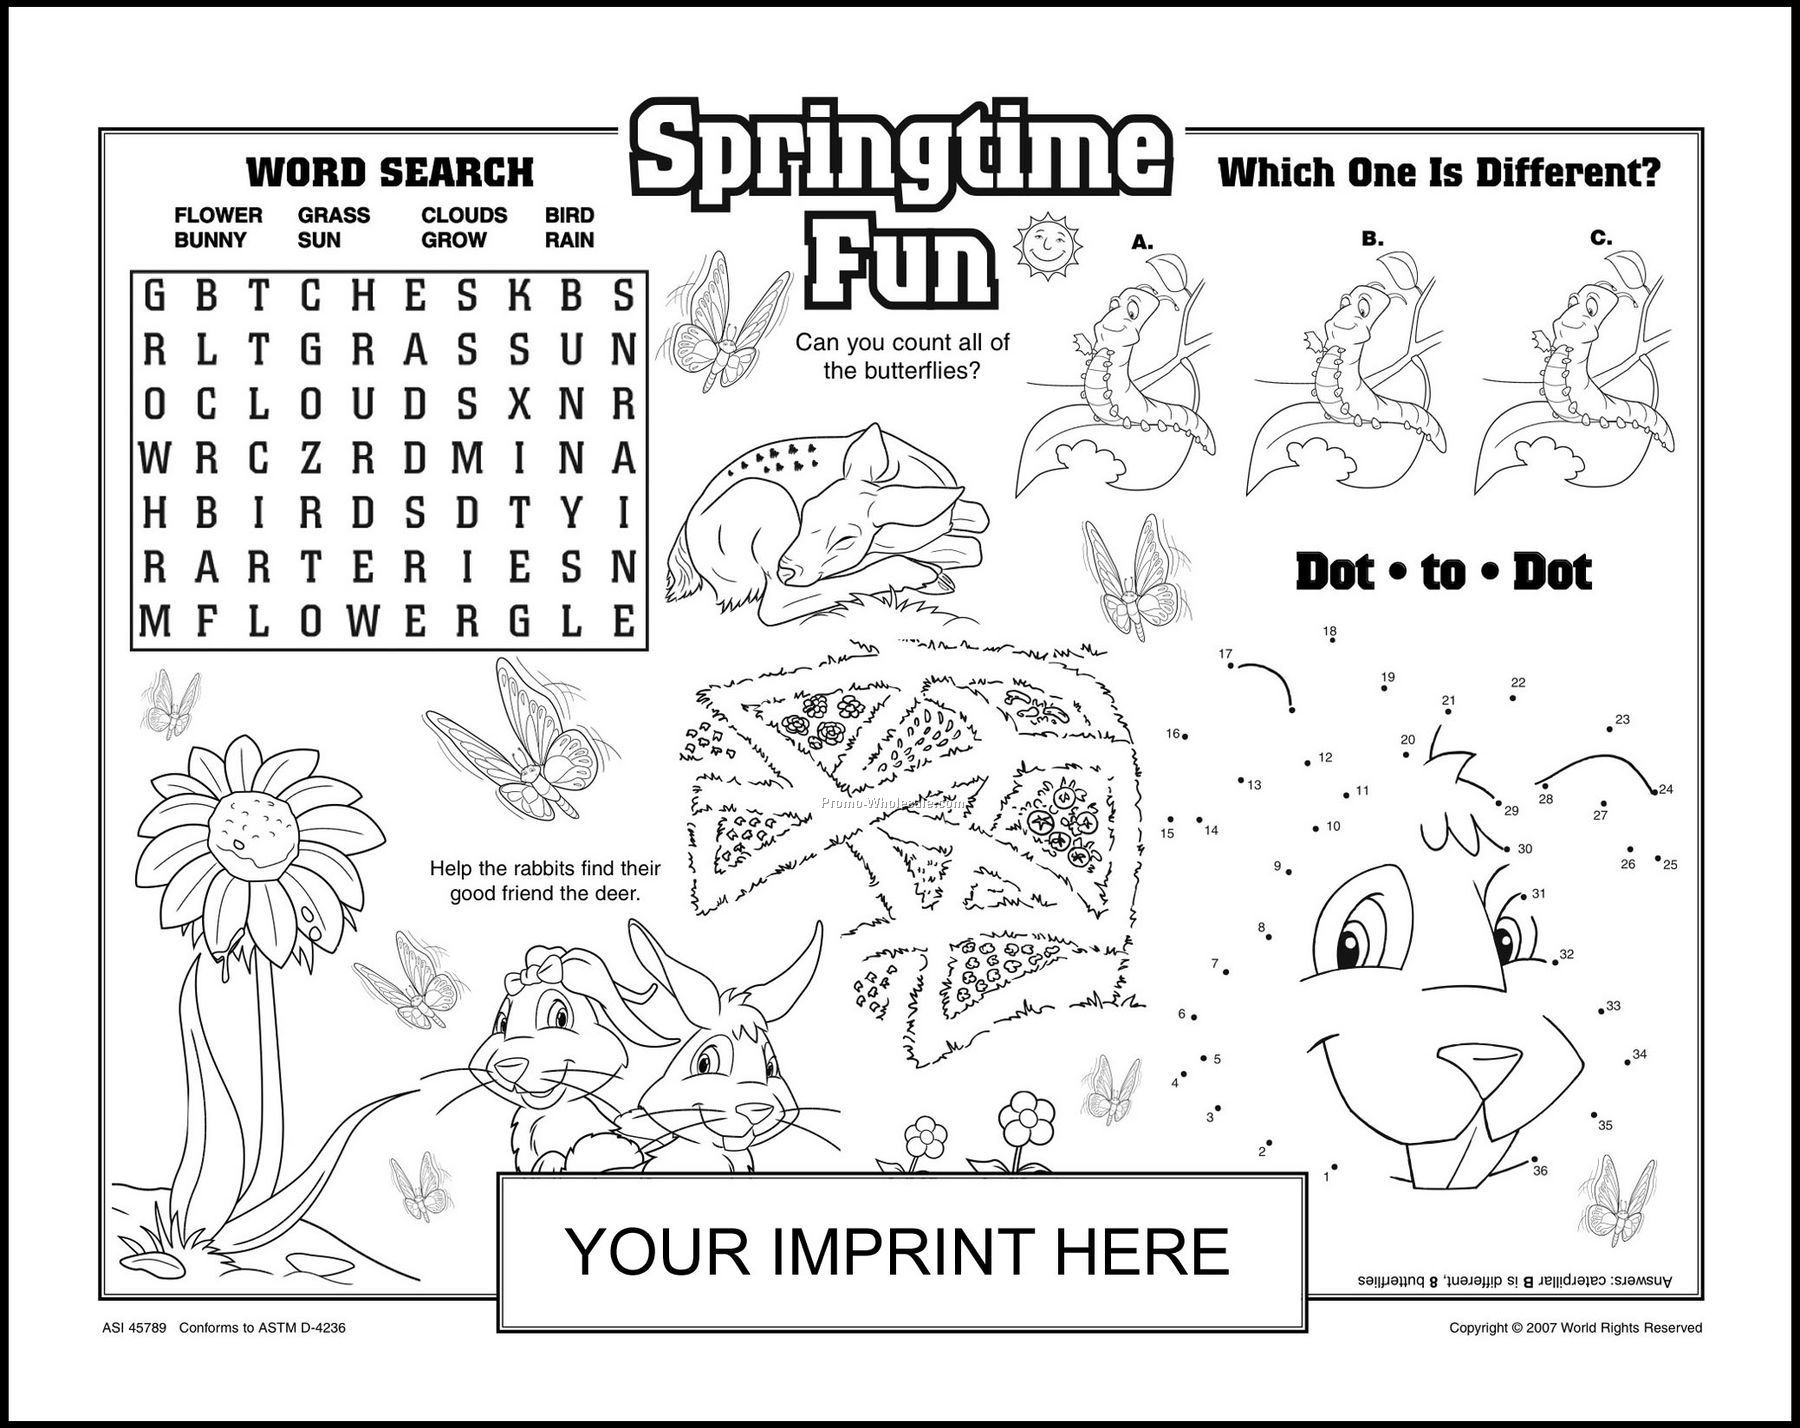 11"x14" Springtime Fun Placemat